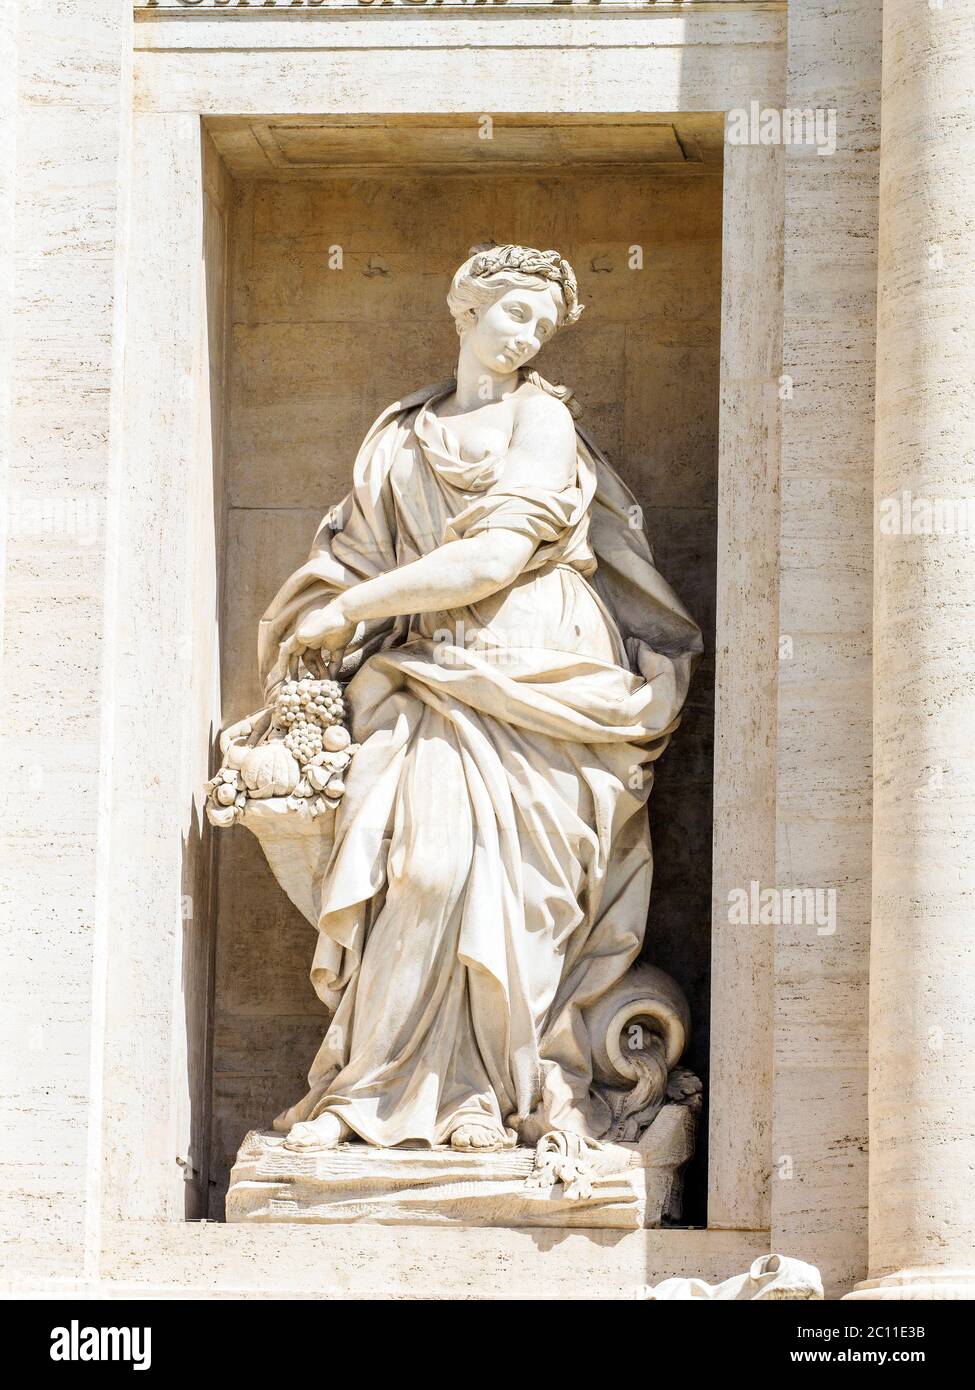 Statua in una delle due nicchie laterali della fontana di Trevi raffigurante abbondanza - Roma, Italia Foto Stock